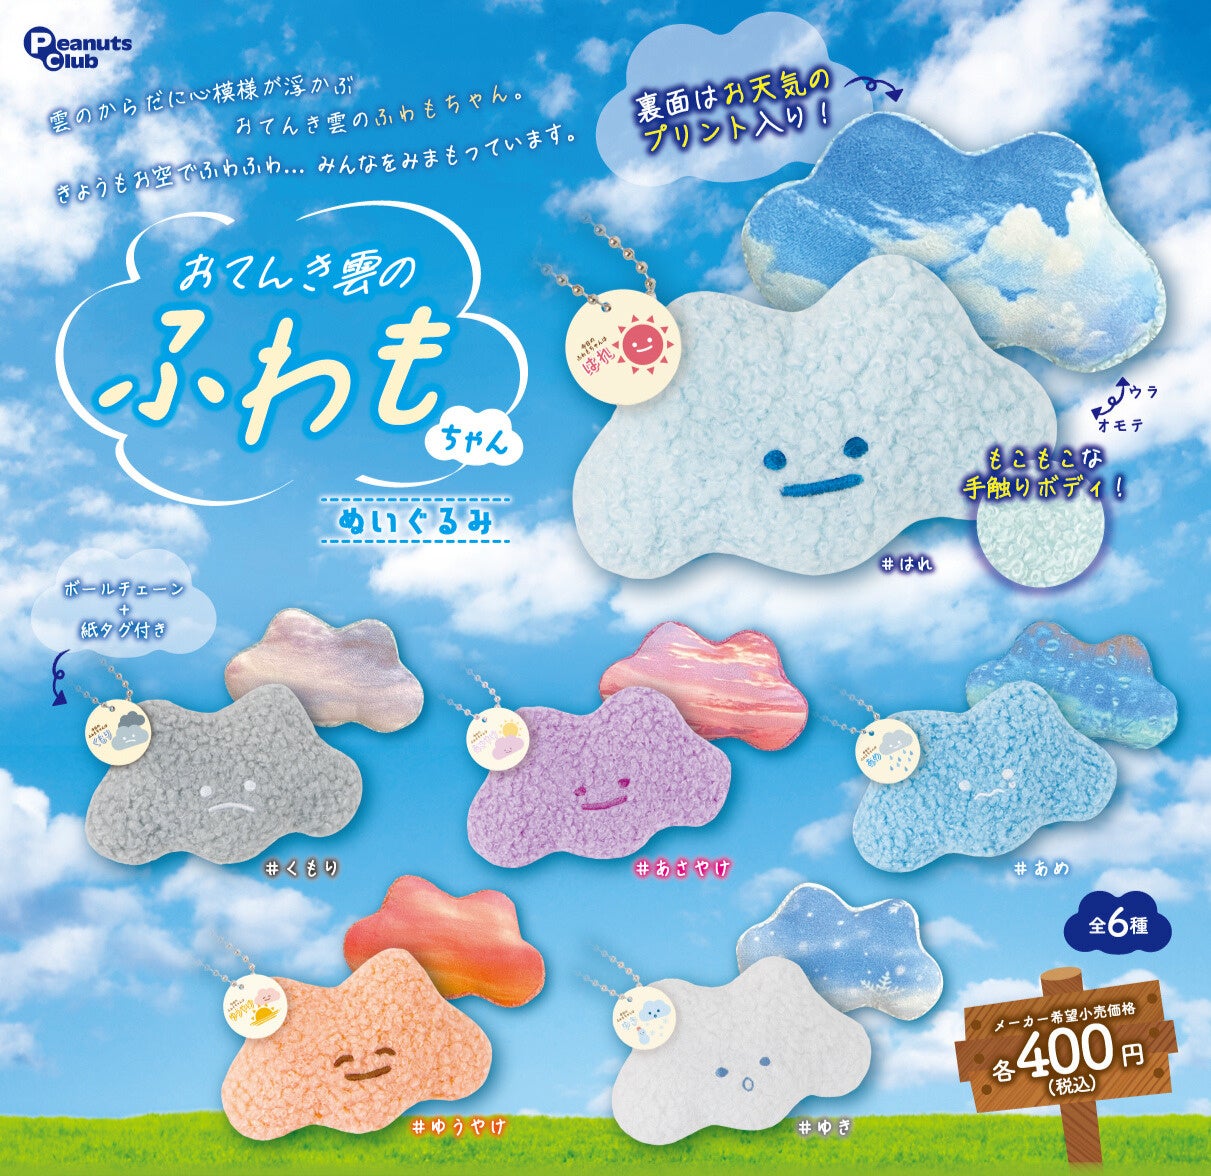 あのふわふわ雲に触れたらこんな感じ？　ユーモアかわいいカプセルトイ『おてんき雲のふわもちゃん』 新発売